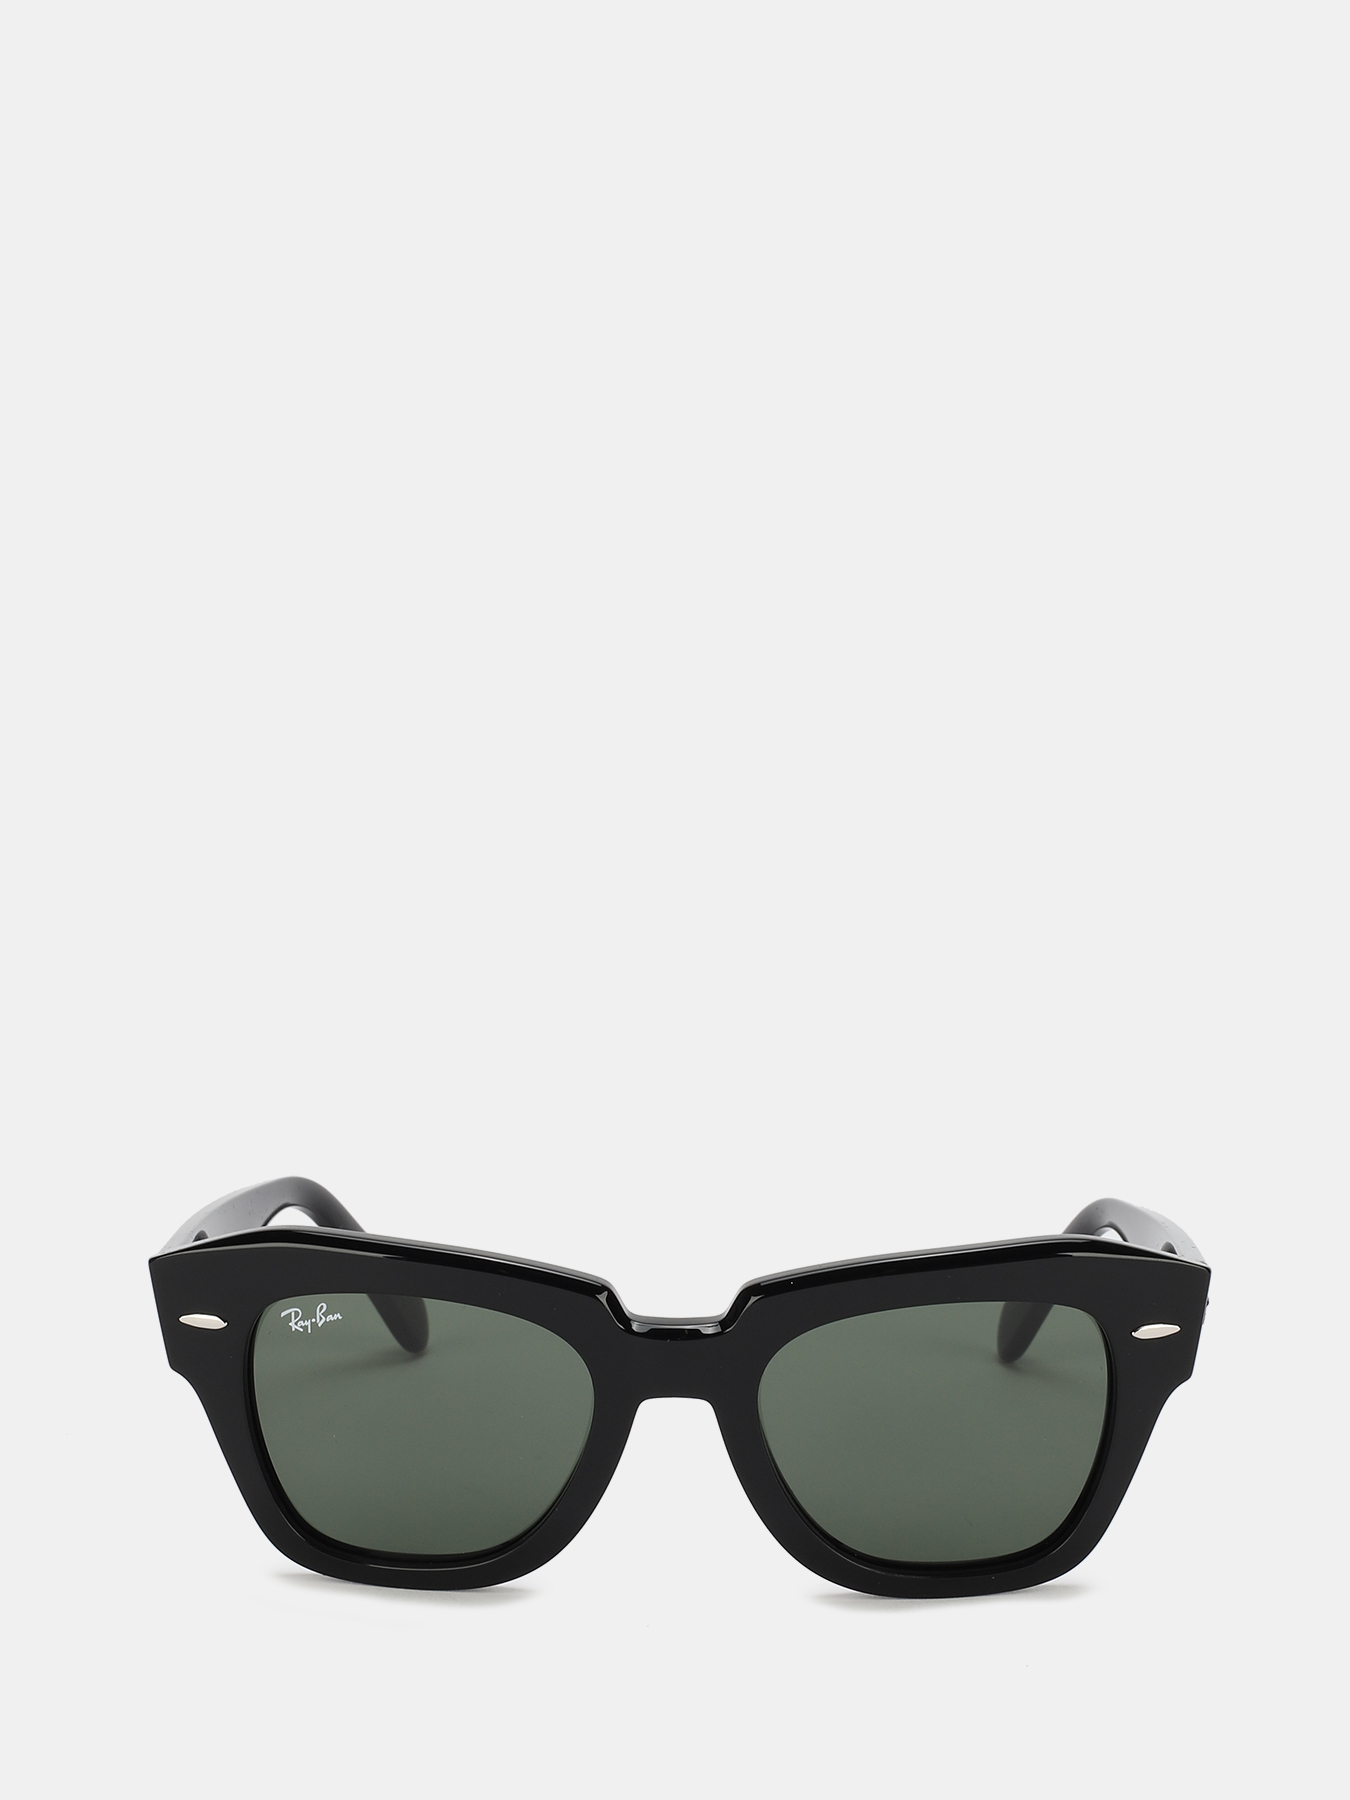 Солнцезащитные очки Ray-Ban 368655-288, цвет черный, размер 49